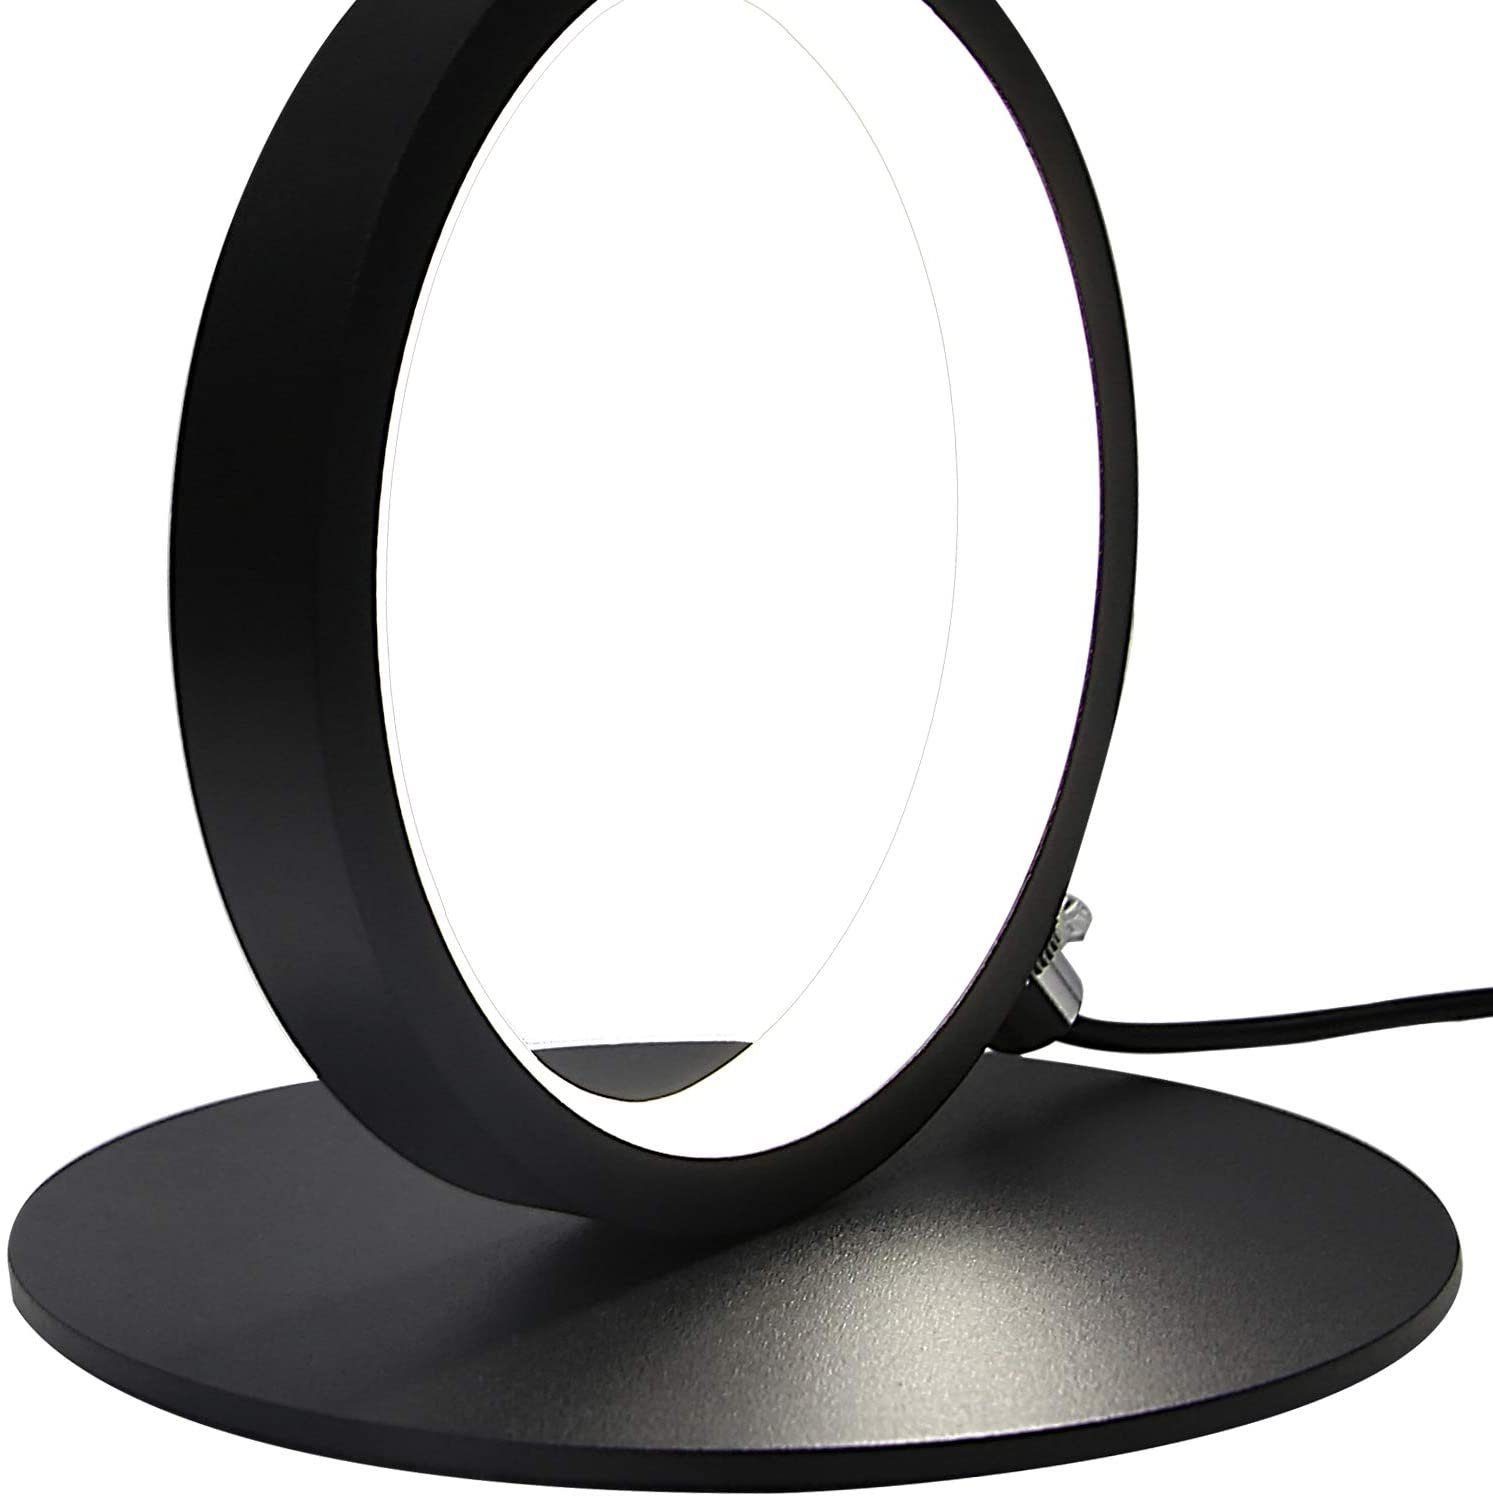 Nachttischlampe ZMH 2x Set Schreibtischlampe Schwarz Deko fest Dimmfunktion, warmweiß-kaltweiß, LED Schlafzimmer, Schwarz integriert, 2 LED Ring